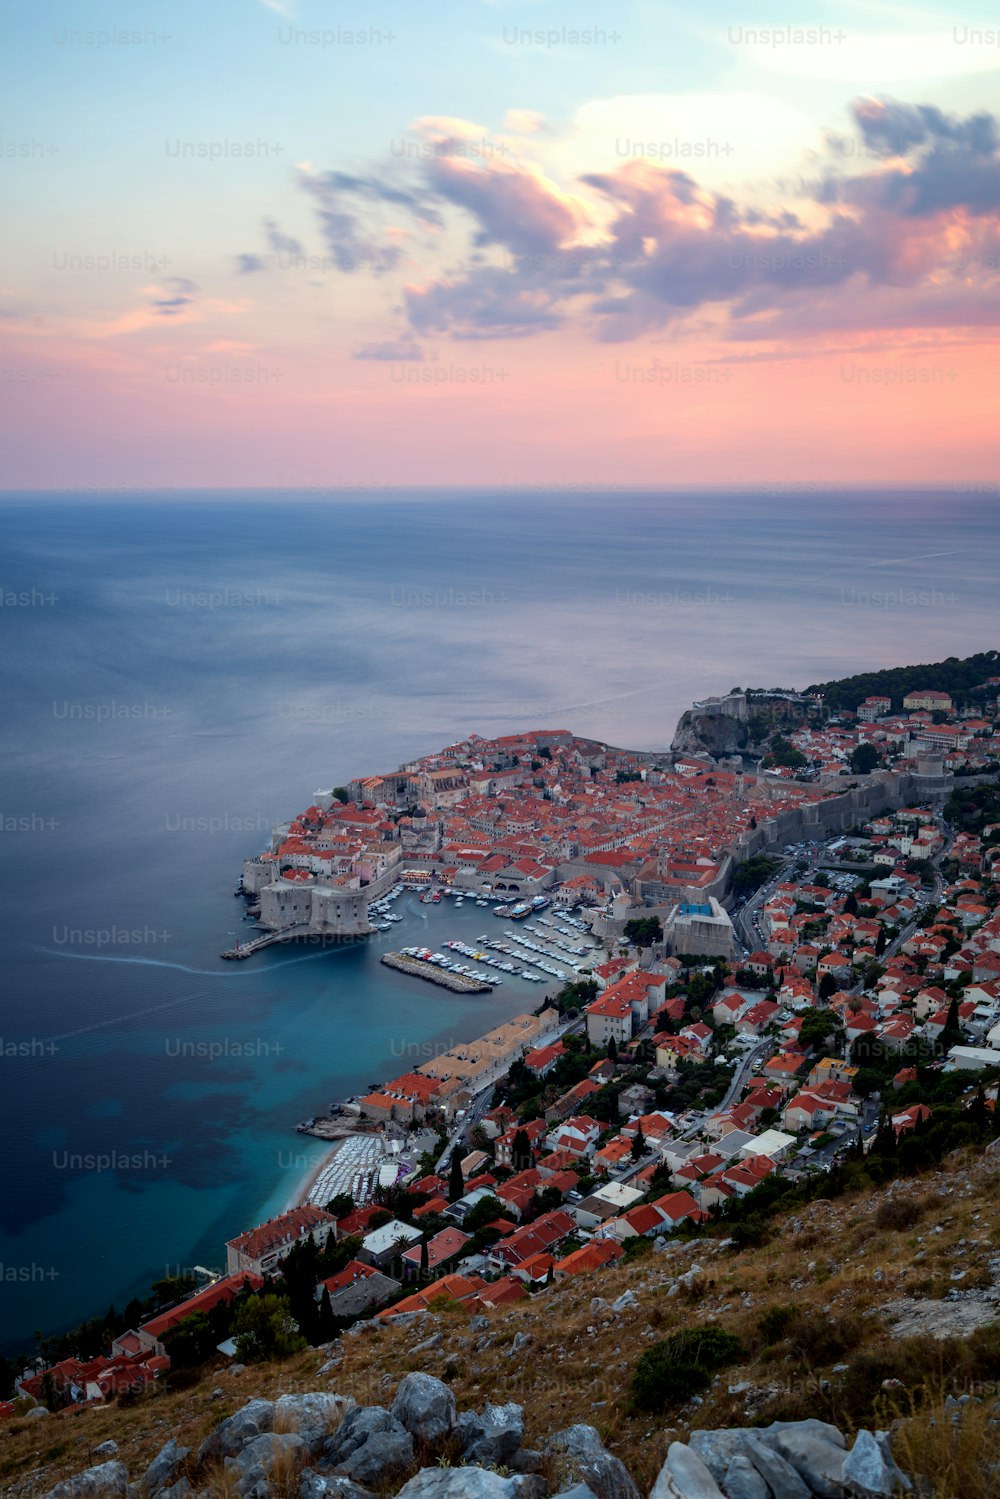 Vieille ville de Dubrovnik sur la côte de la mer Adriatique, Dalmatie, Croatie - destination de voyage de premier plan de la Croatie. La vieille ville de Dubrovnik a été classée au patrimoine mondial de l'UNESCO en 1979.